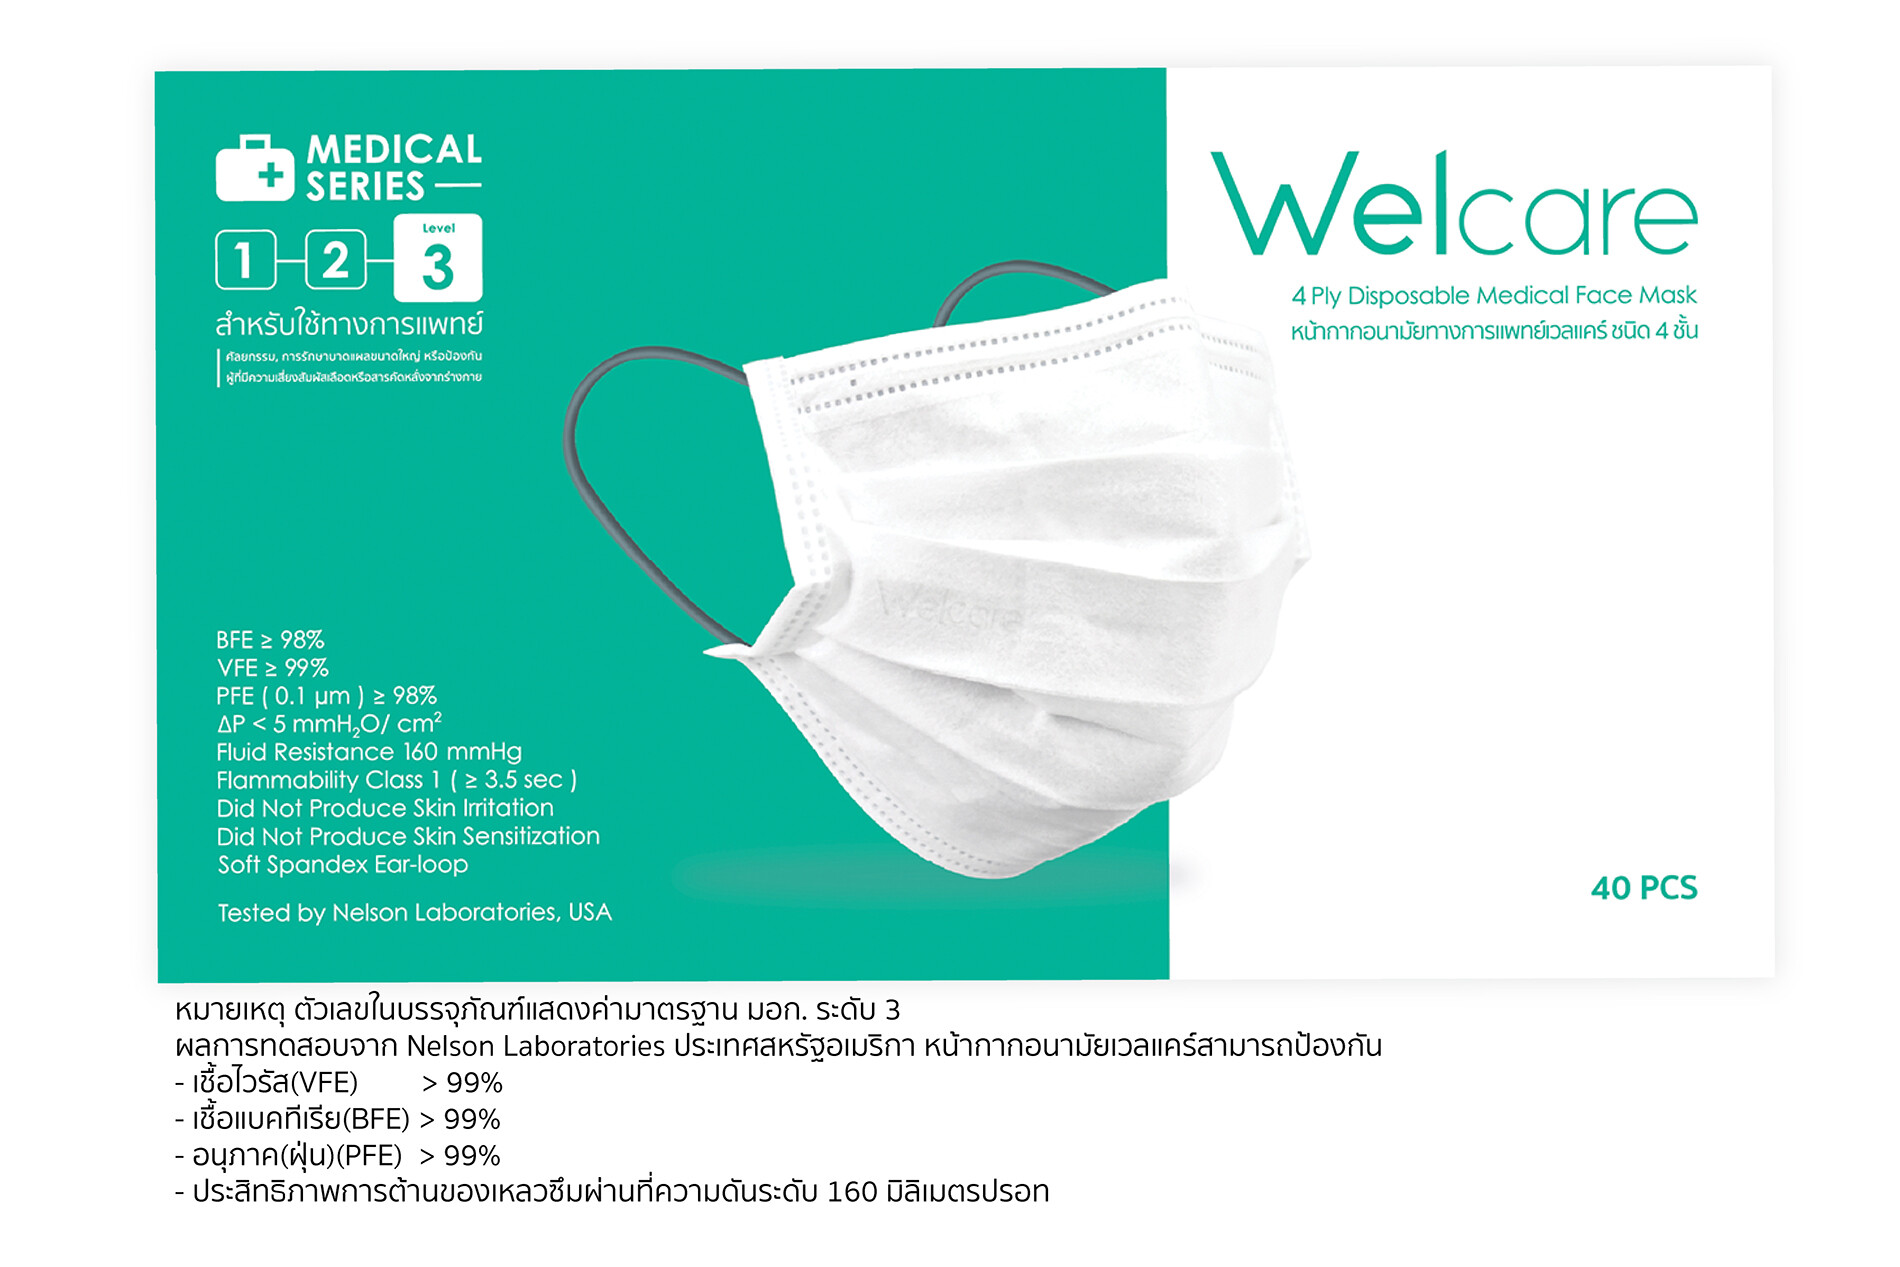 "เวลแคร์" หน้ากากอนามัยเจ้าแรกและเจ้าเดียวของไทย  ที่ผ่านมาตรฐาน มอก.ครบ 3 ระดับ เปิดตัว "หน้ากากอนามัย มอก.ระดับ 3"  เหมาะกับงานทางการแพทย์ศัลยกรรมในโรงพยาบาล